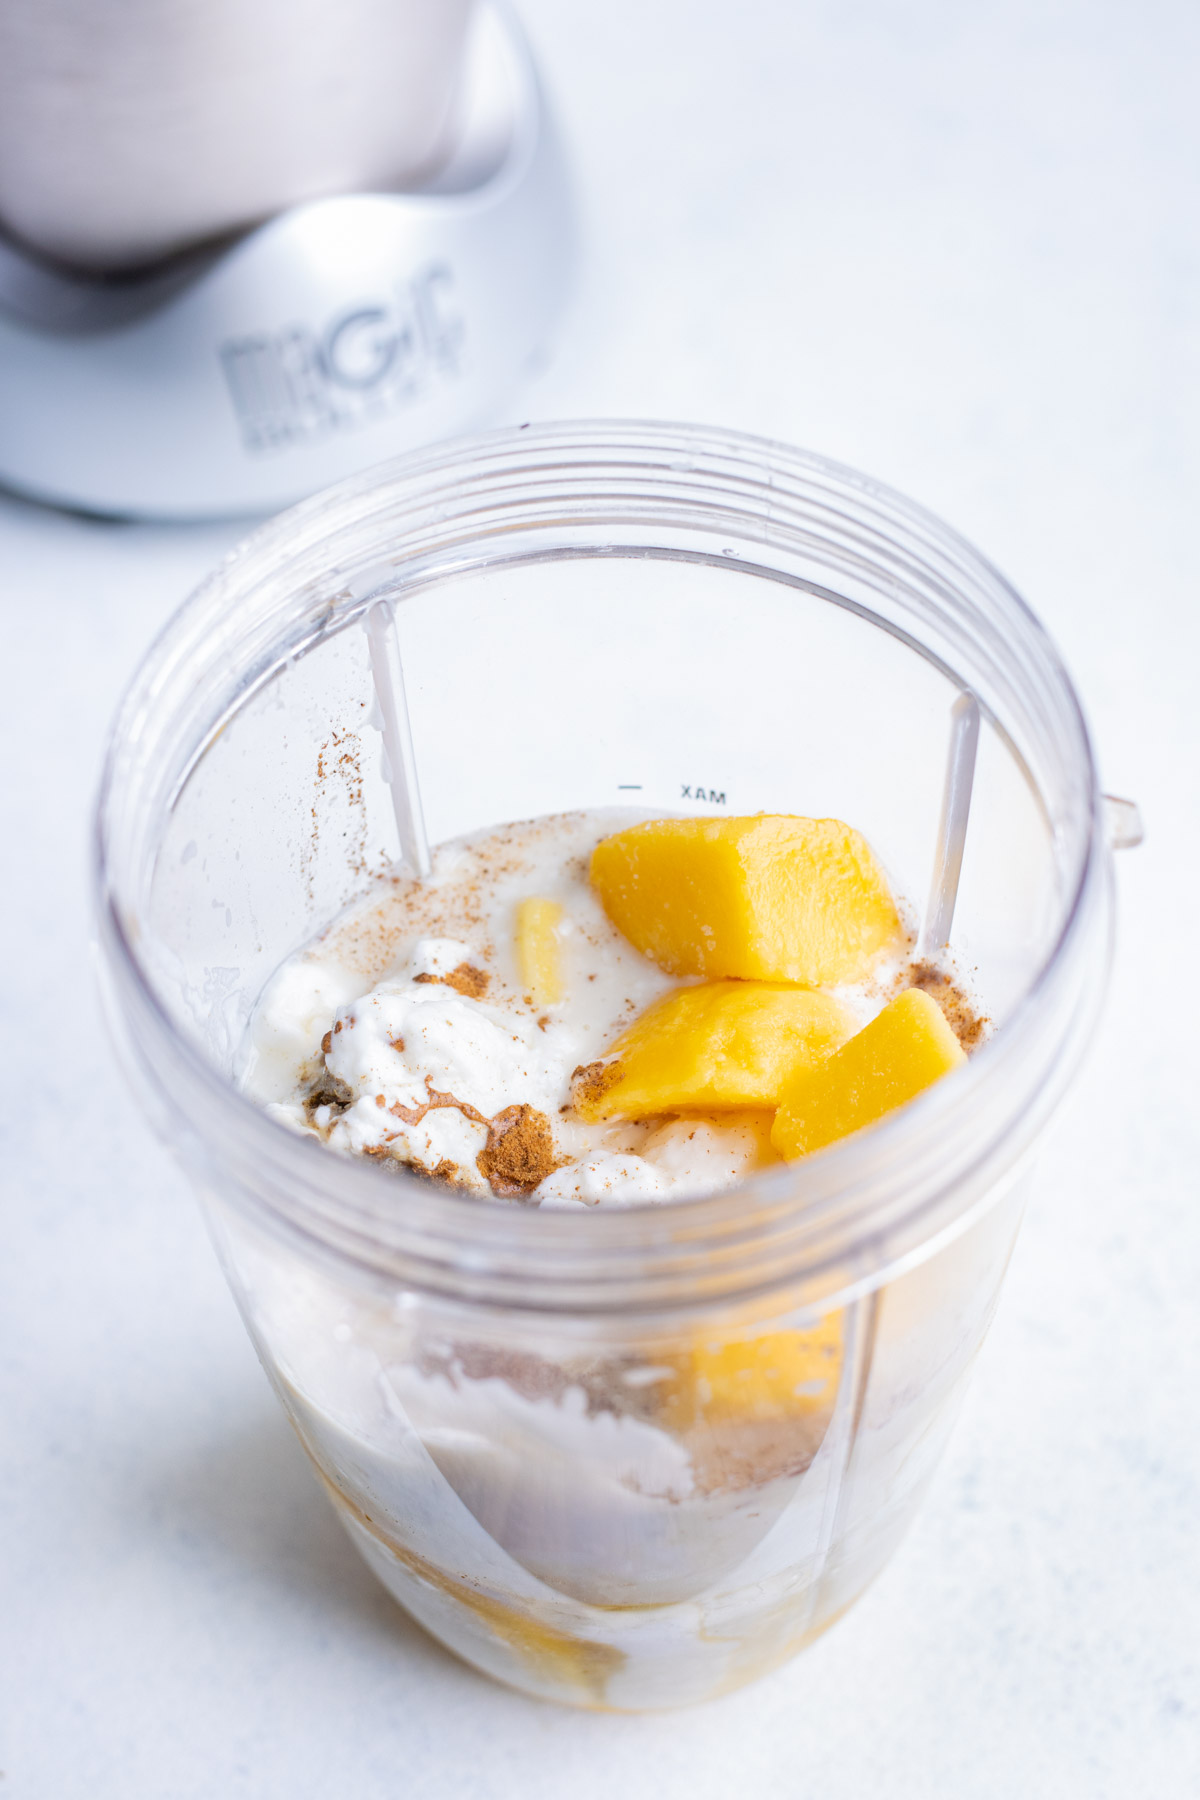 Creamy and Delicious Mango Lassi Recipe - Shivani Loves Food